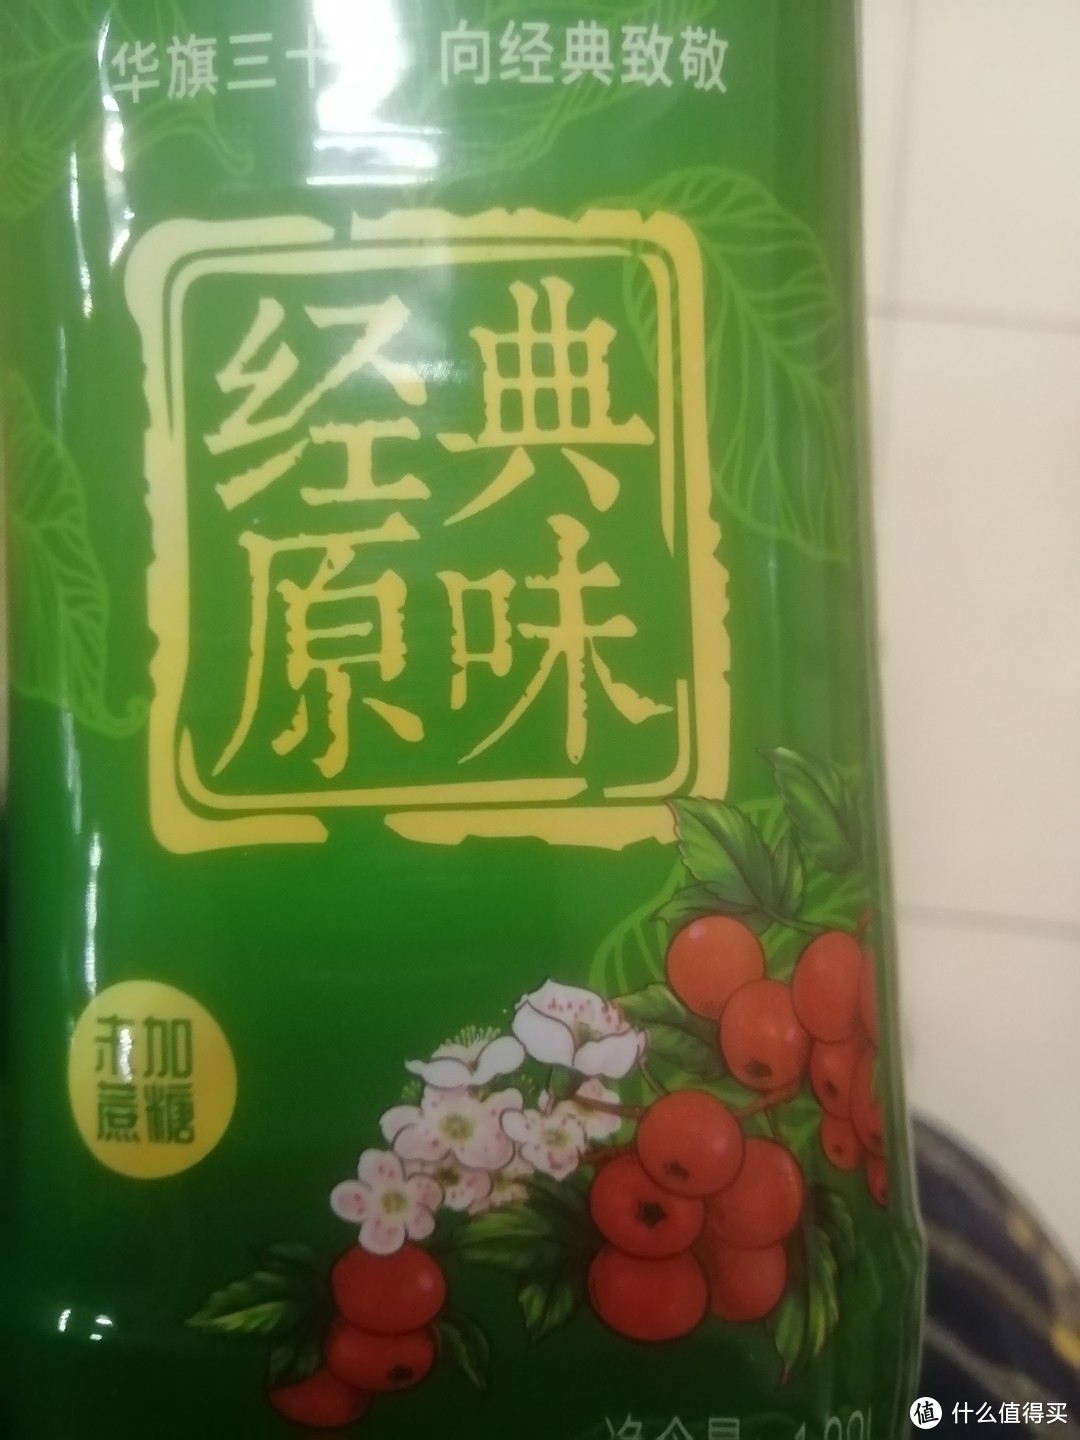 春季饮品大赏之华旗山楂果茶